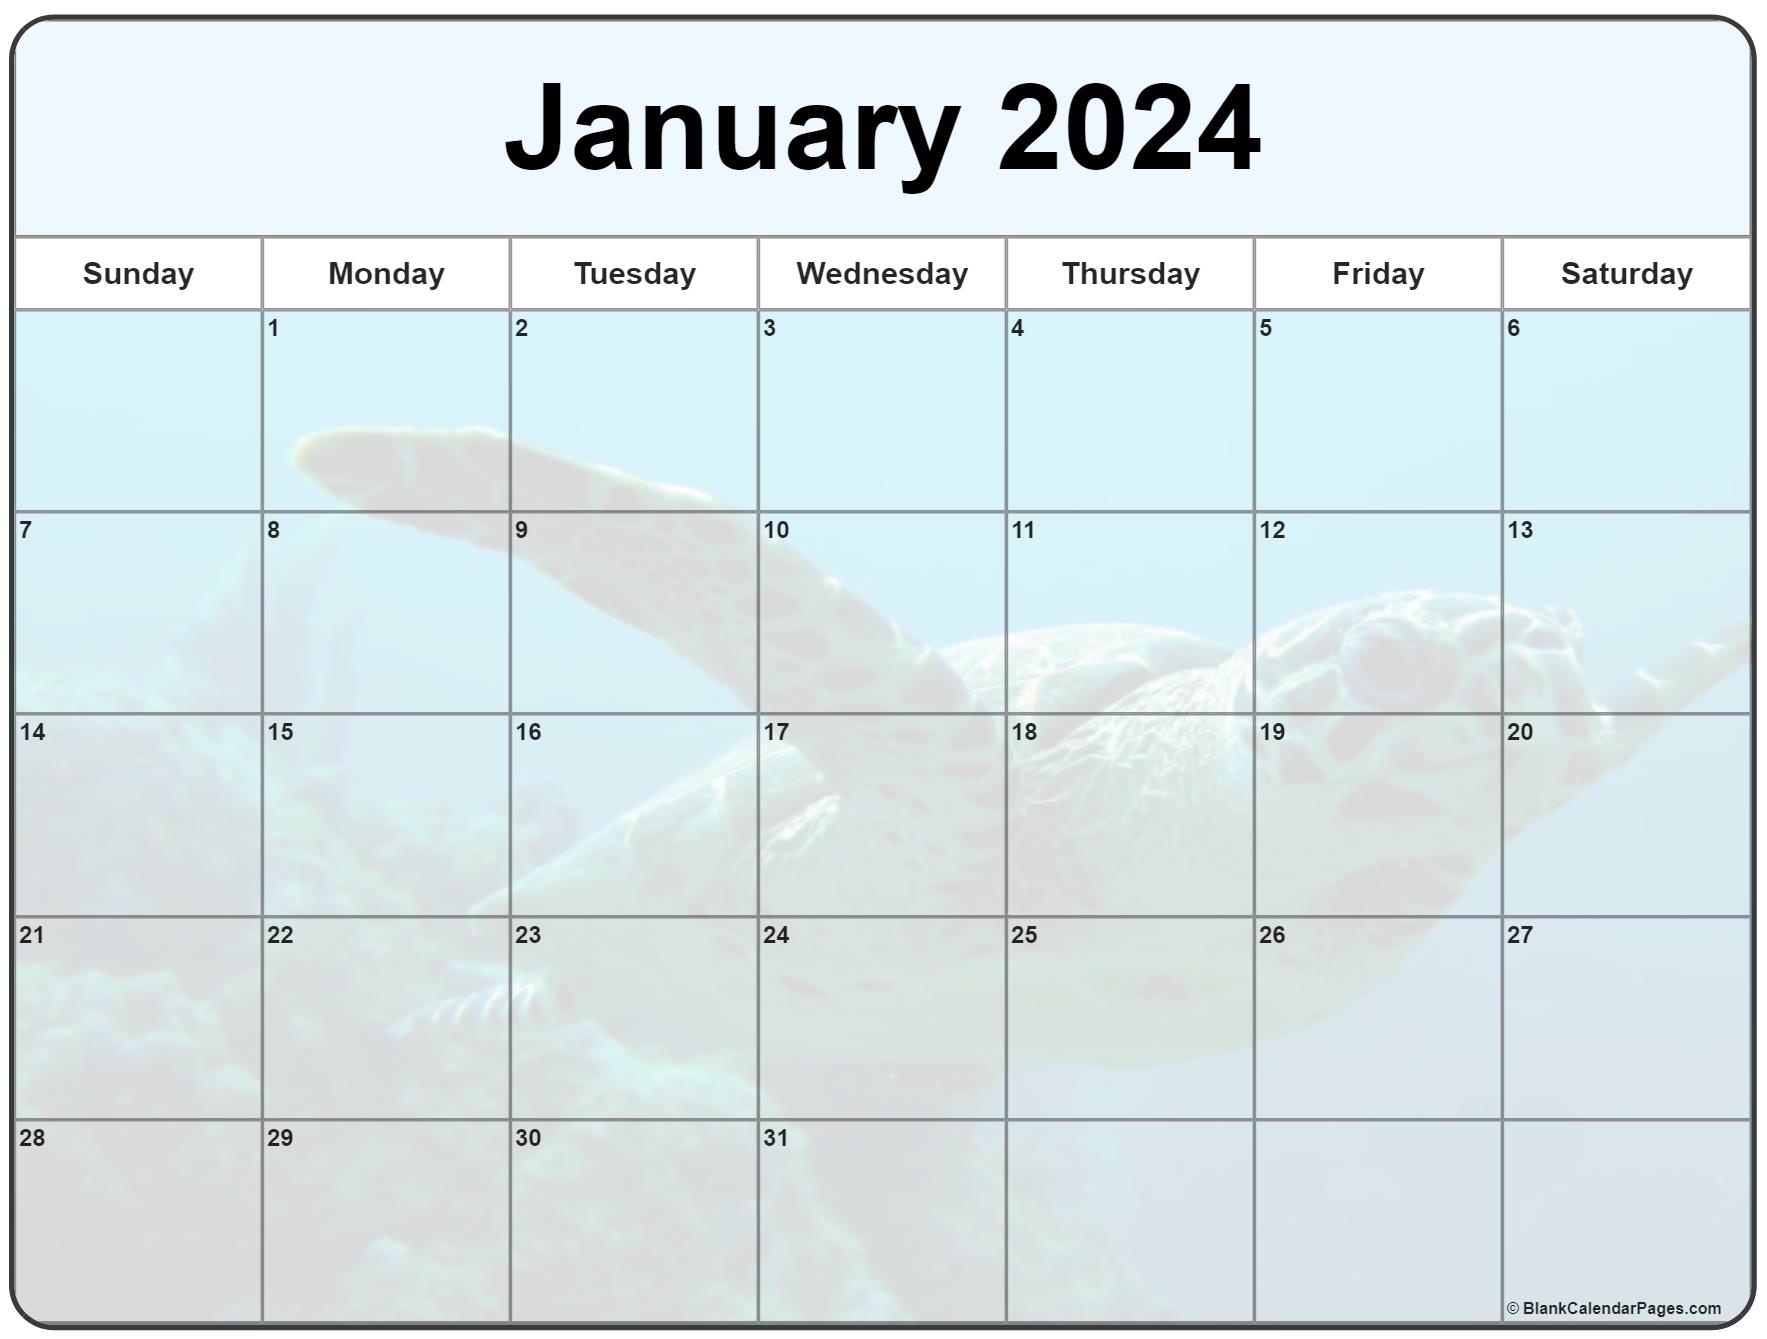 January 2024 Bir Calendar Cool Latest Incredible January 2024 Calendar Blank